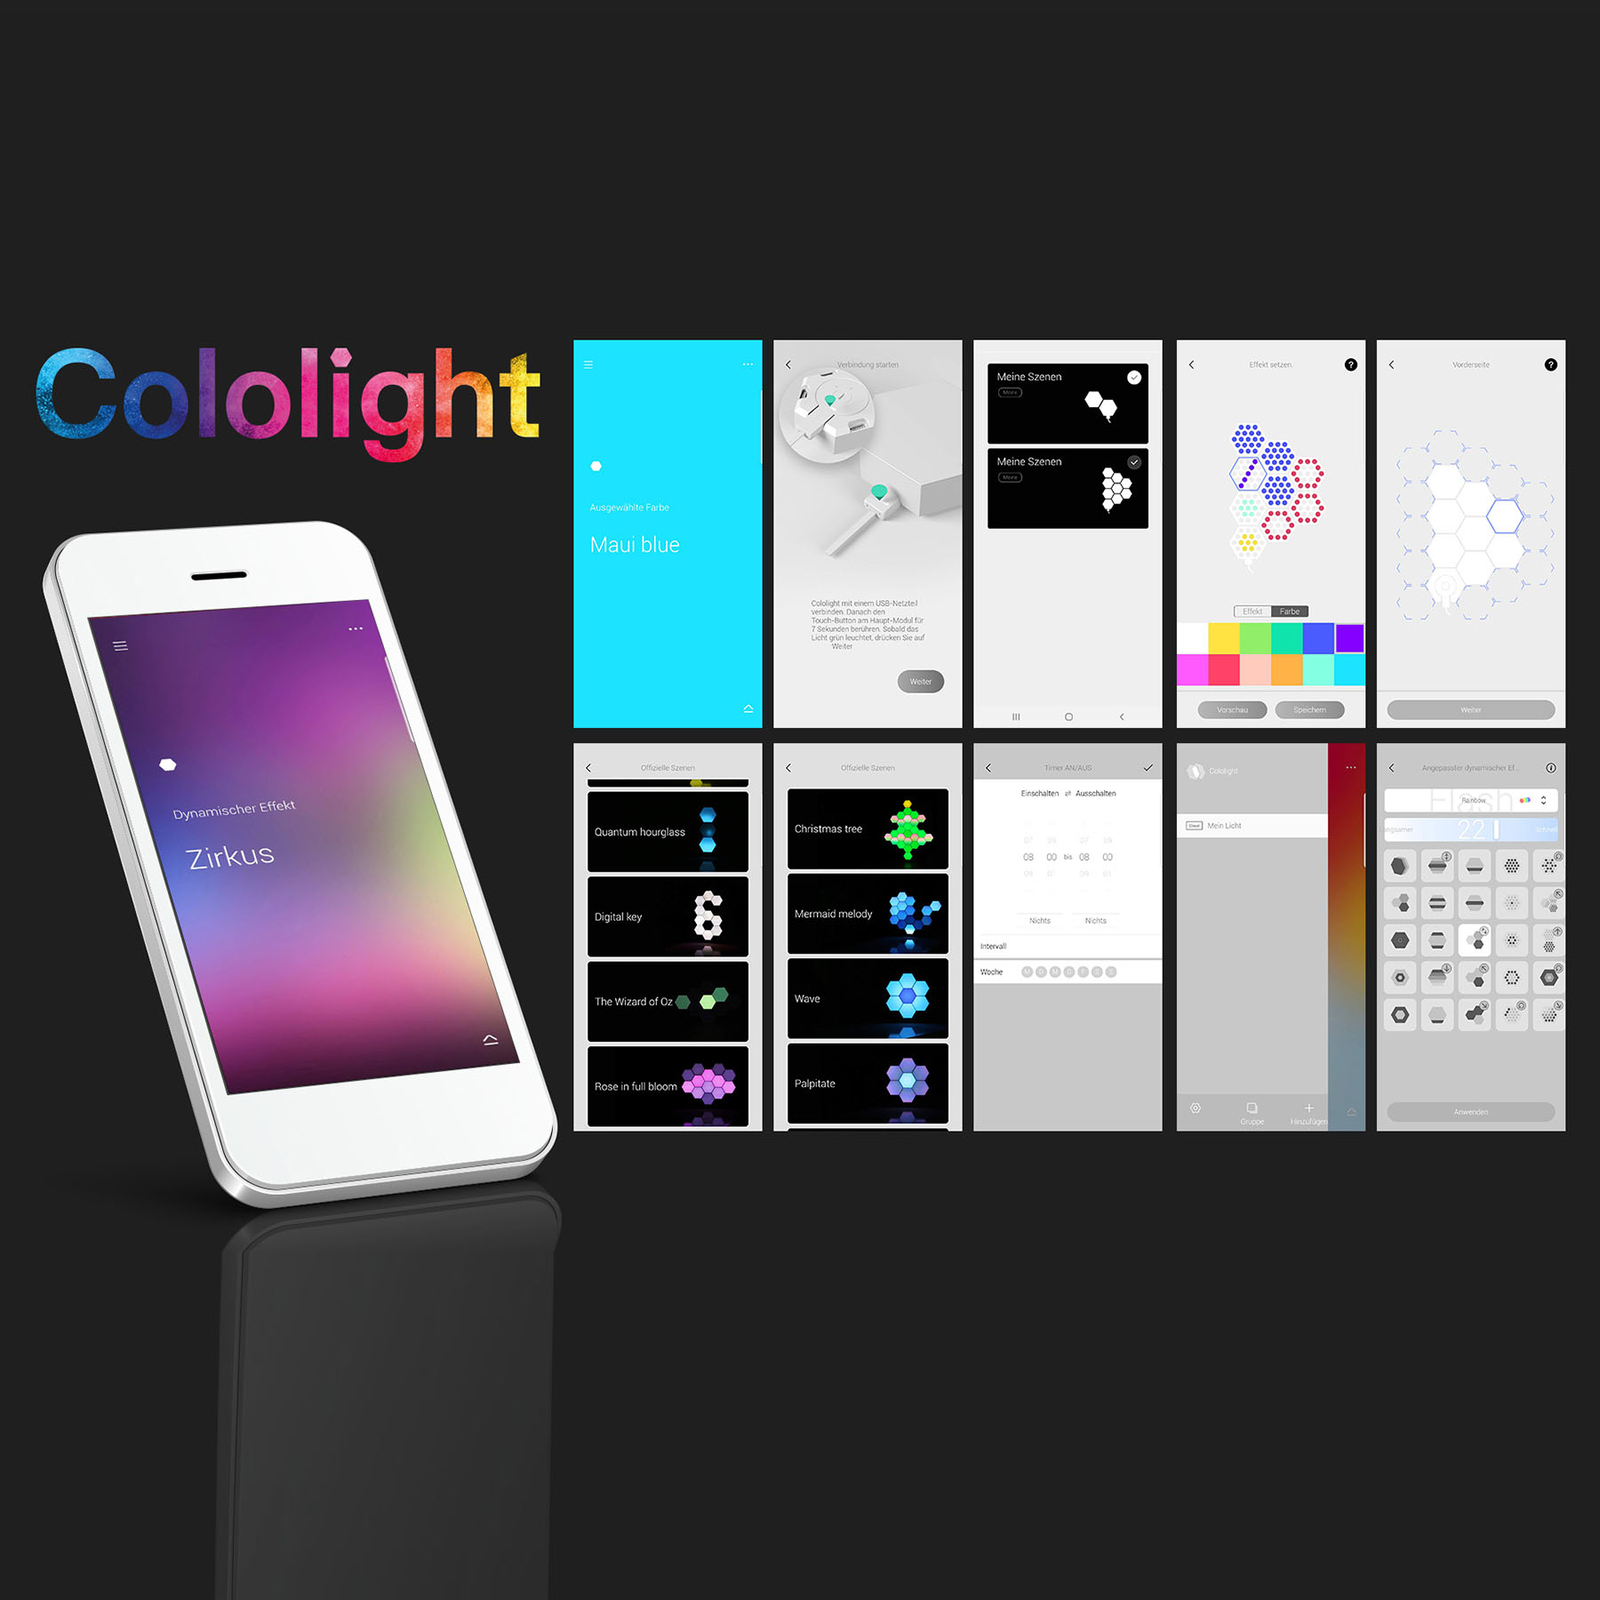 Cololight Plus Starter Set, 7 moduler med sokkel